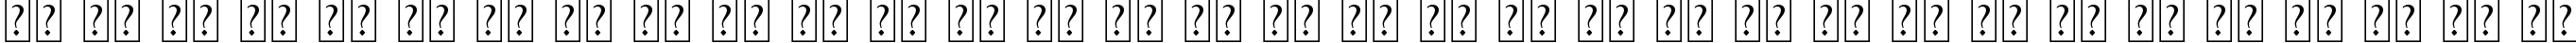 Пример написания русского алфавита шрифтом BEDOUIN